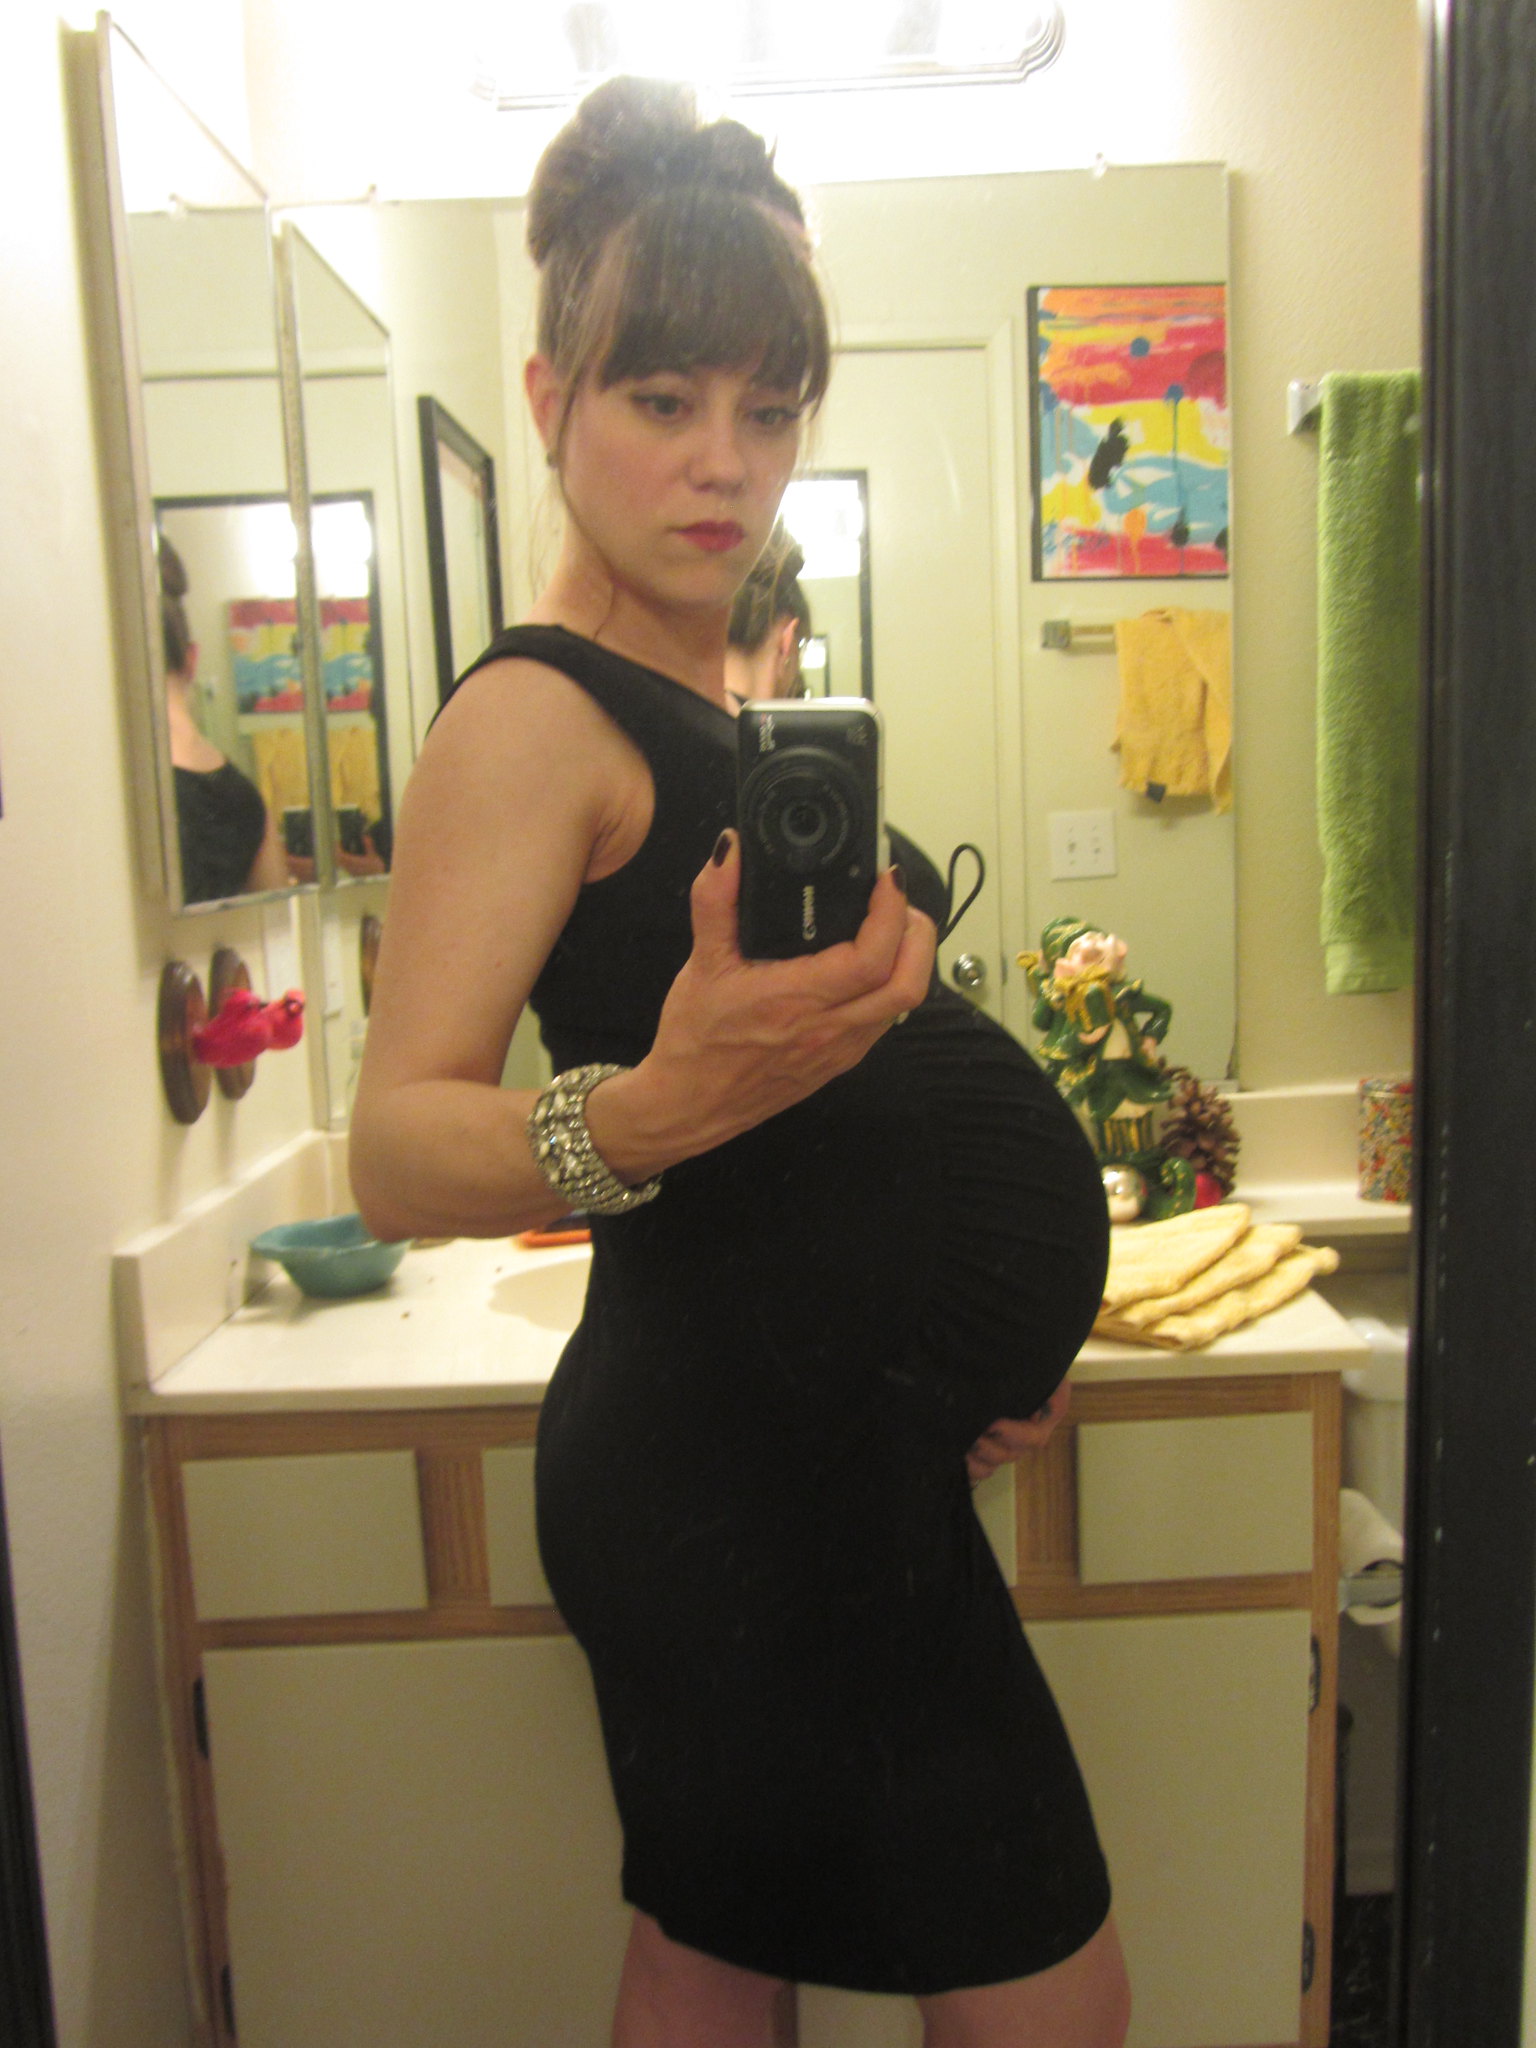 Une femme enceinte qui prend un selfie | Source : Flickr